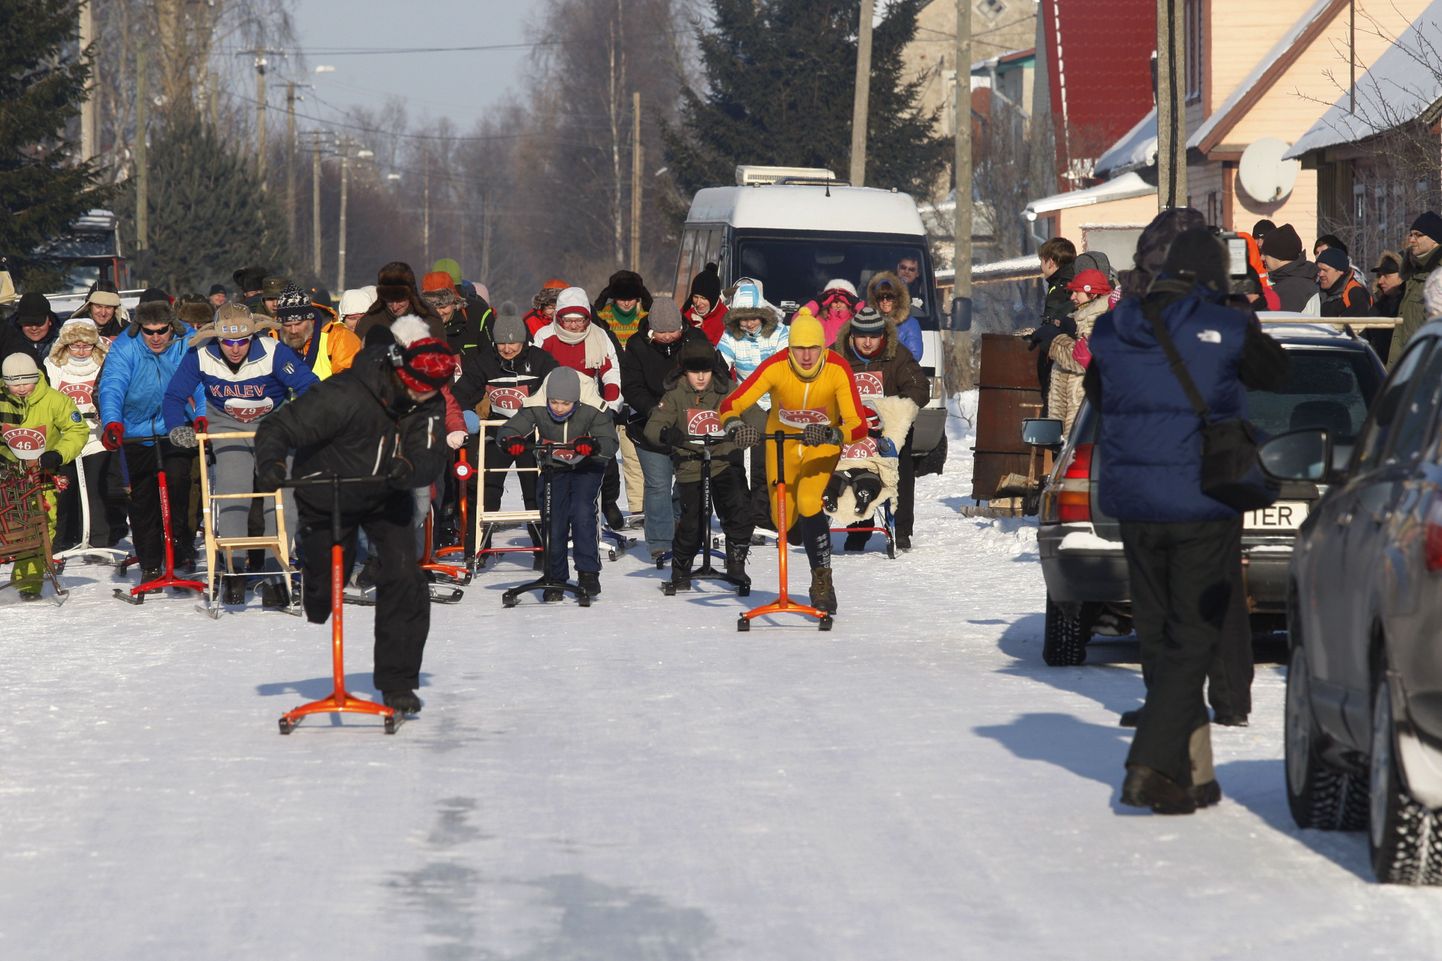 Kolm aastat tagasi 5. veebruaril Kolkjas peetud tõukelgupäeval osales ligi 90 võistlejat. Külma oli tol päeval hommikul 30 ja keskpäeval 22 kraadi.